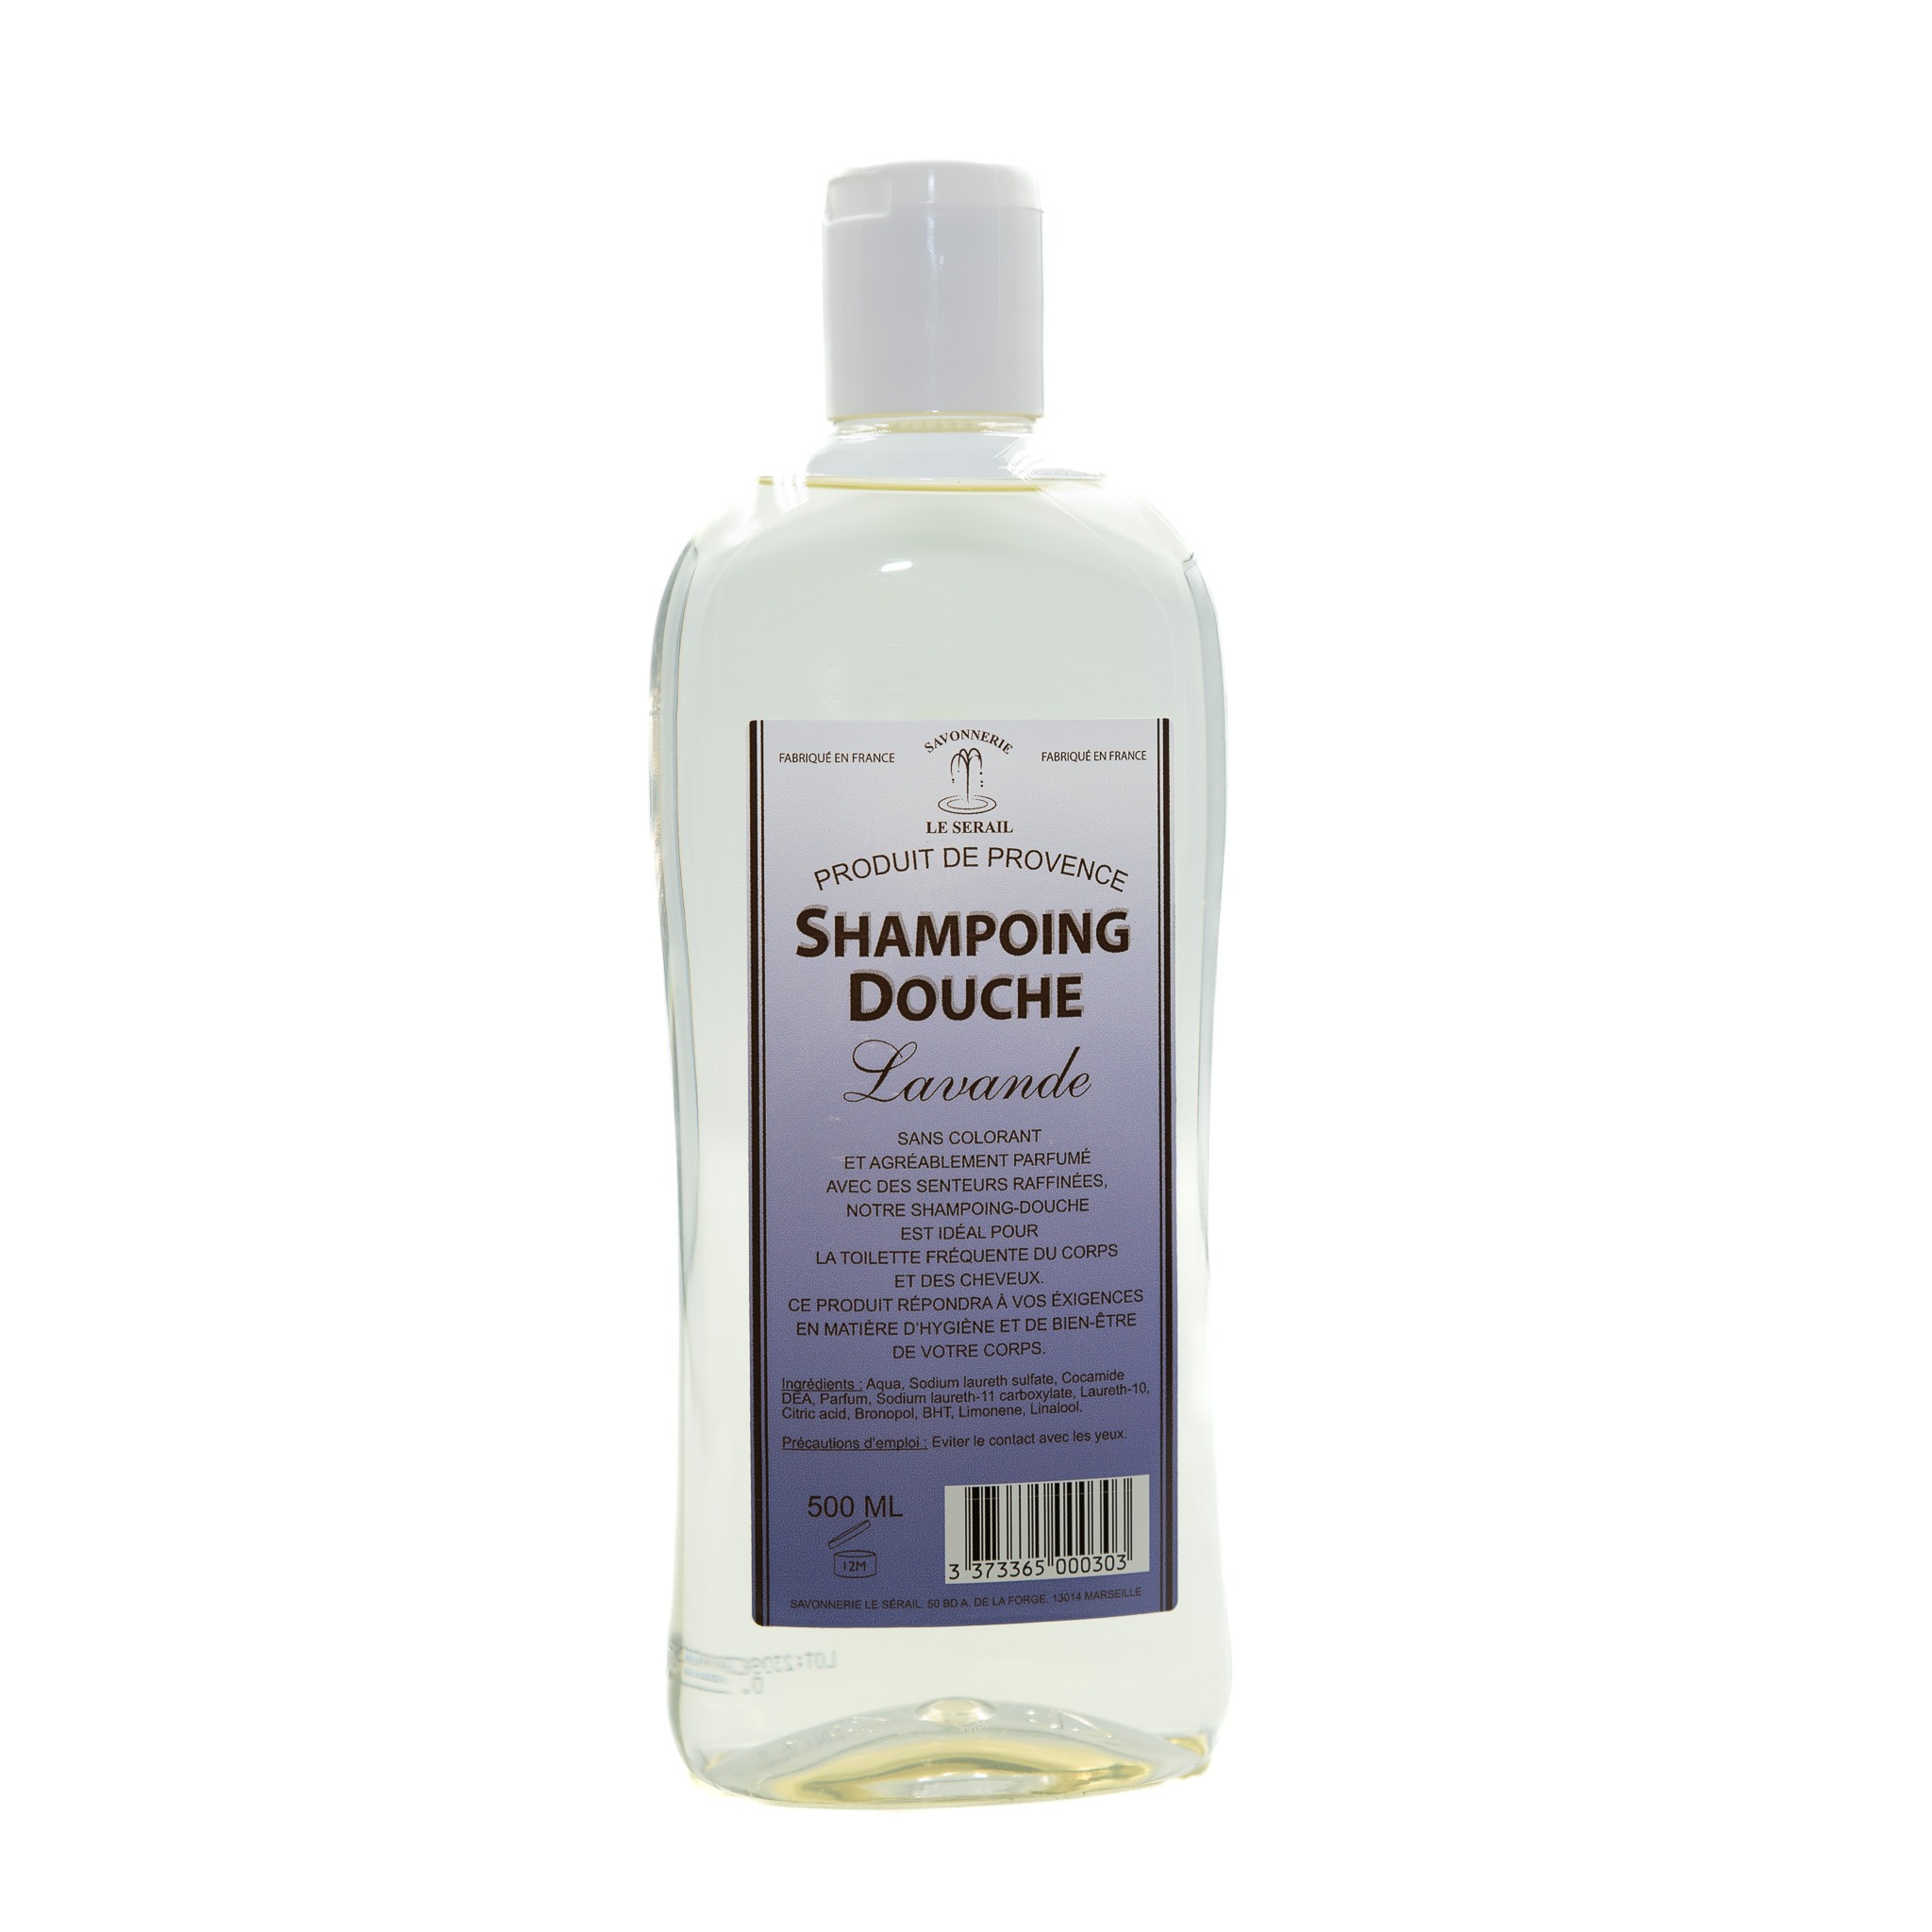 Shampoing douche Lavande Le Sérail 500 ml